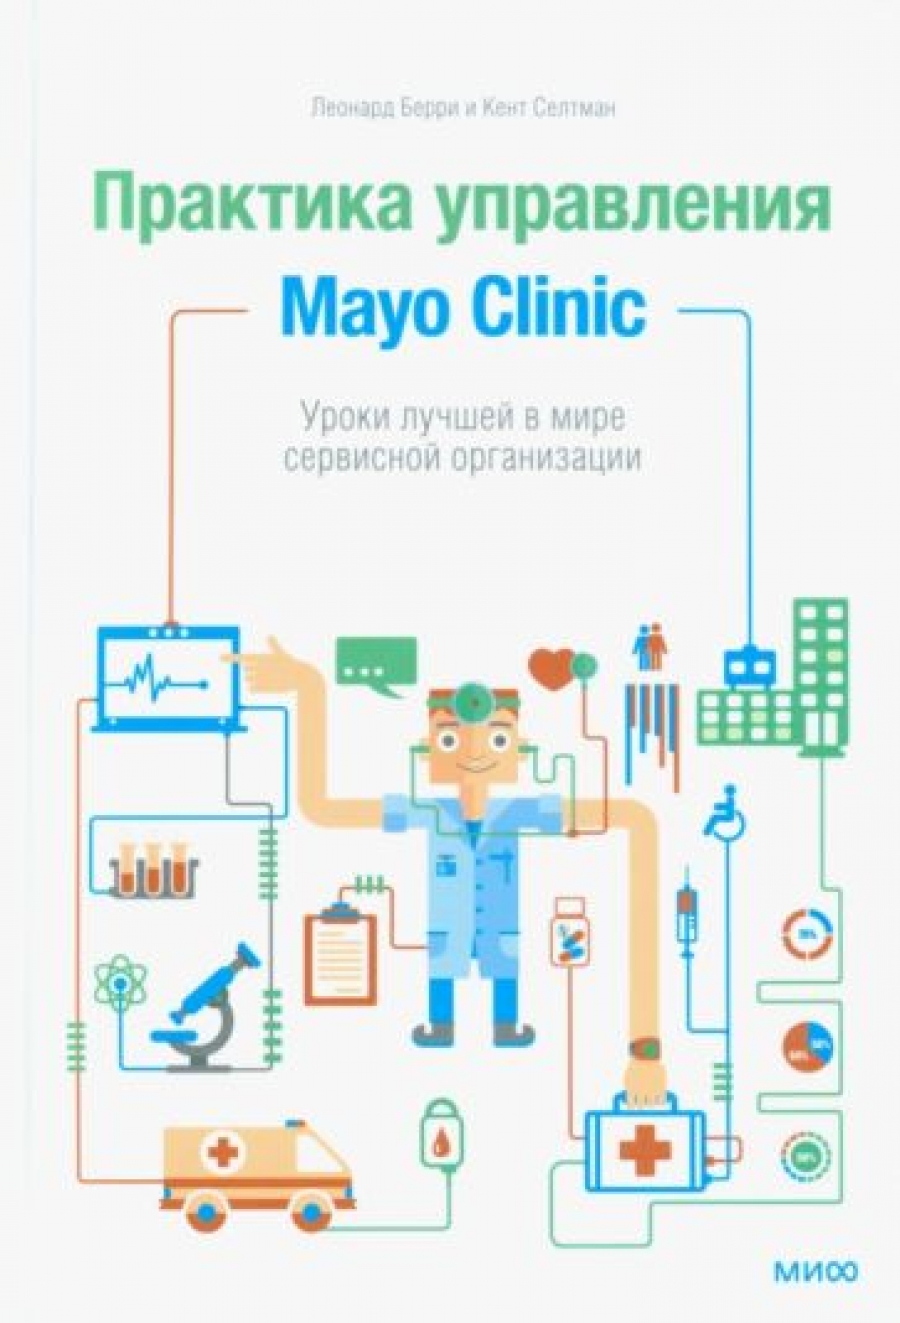  ,     Mayo Clinic.       